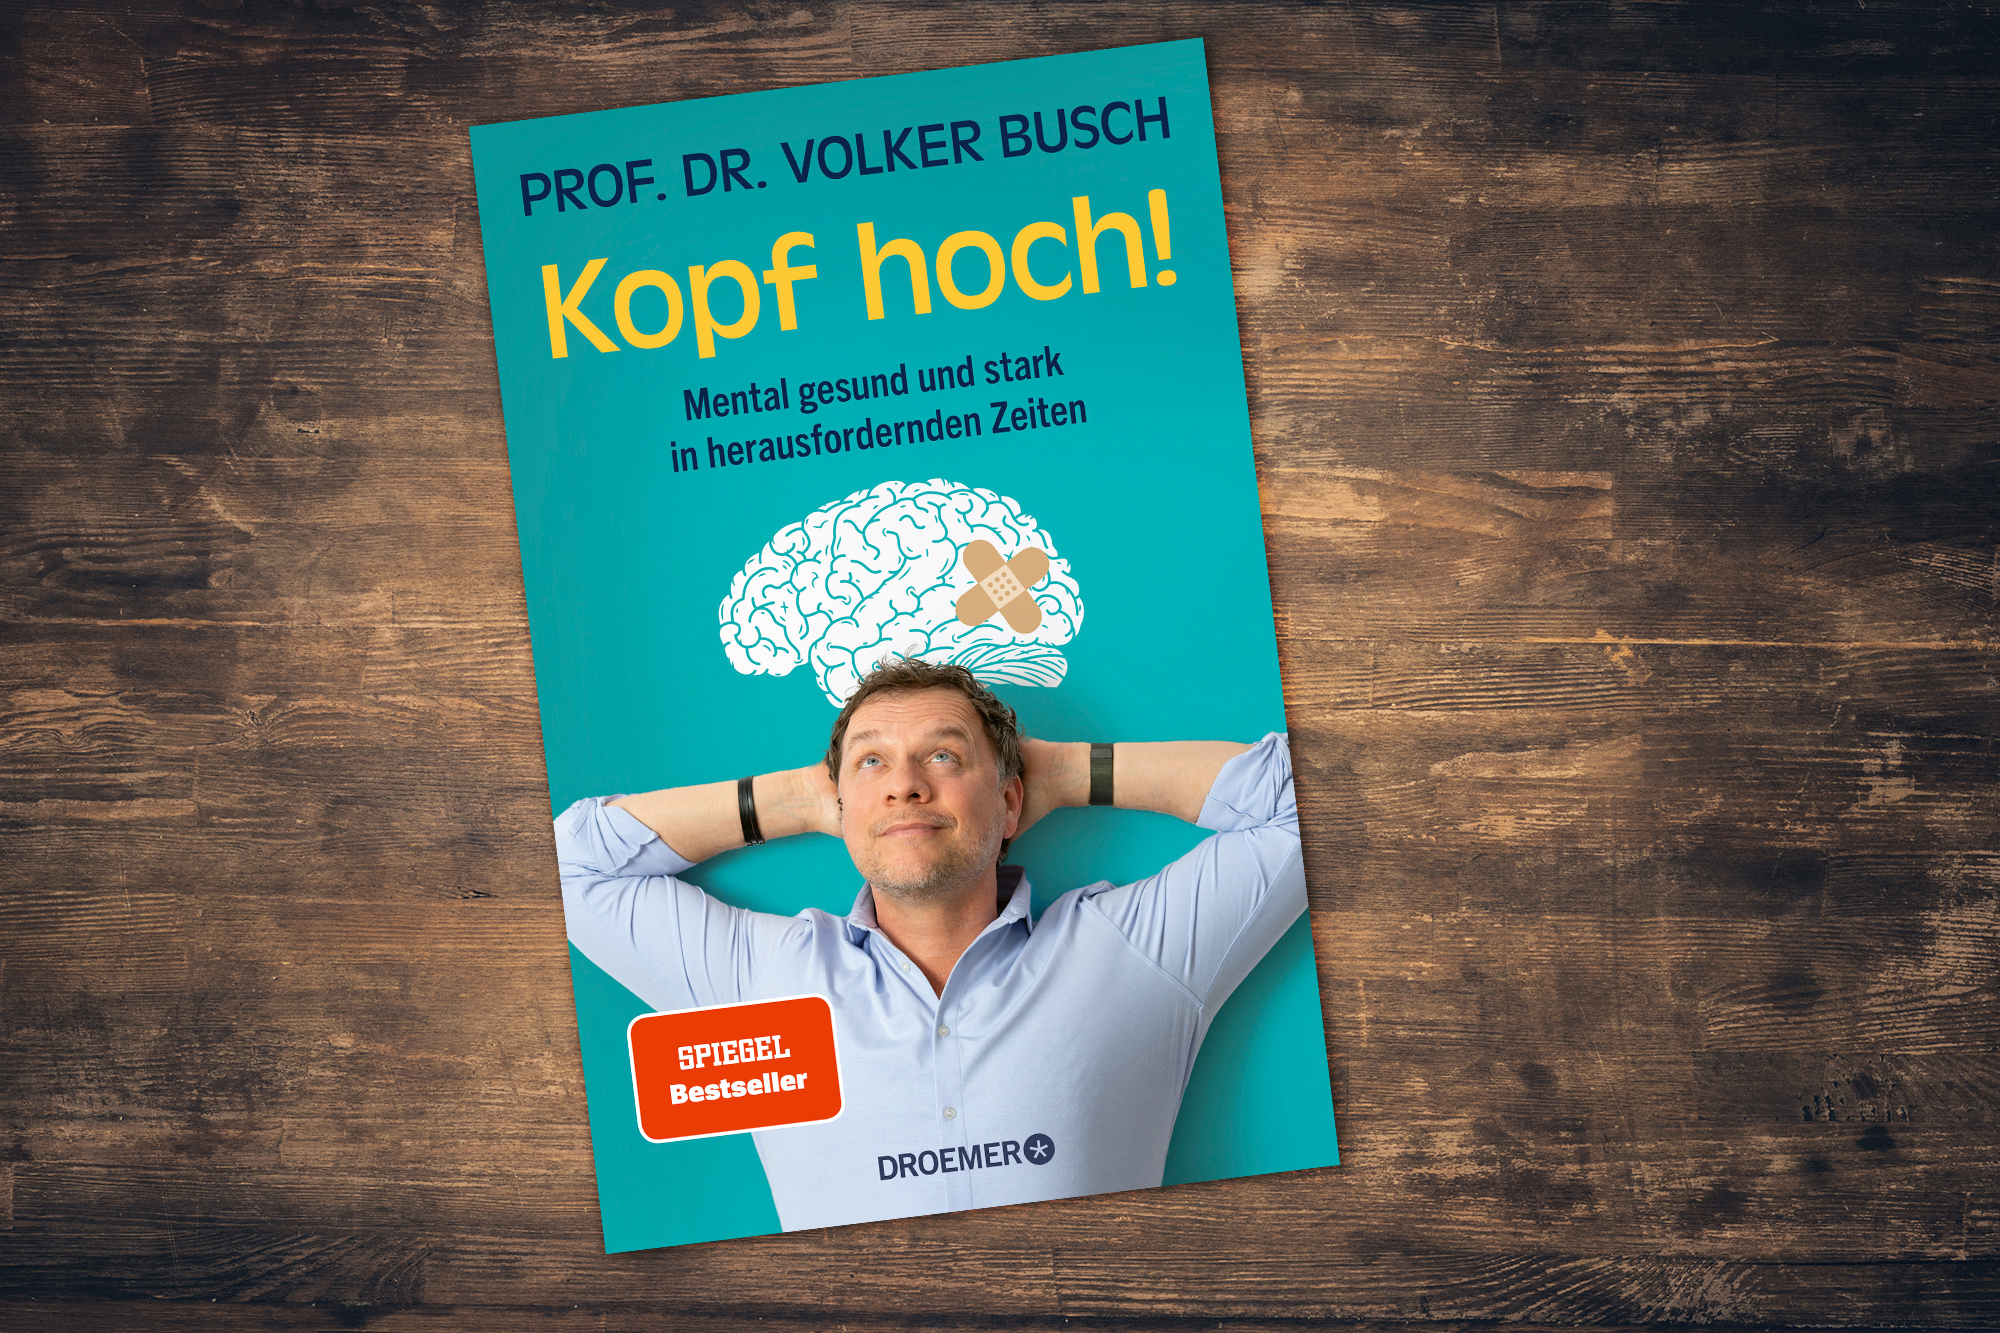 "Kopf hoch - mental gesund und stark in herausfordernden Zeiten" - Volker Busch